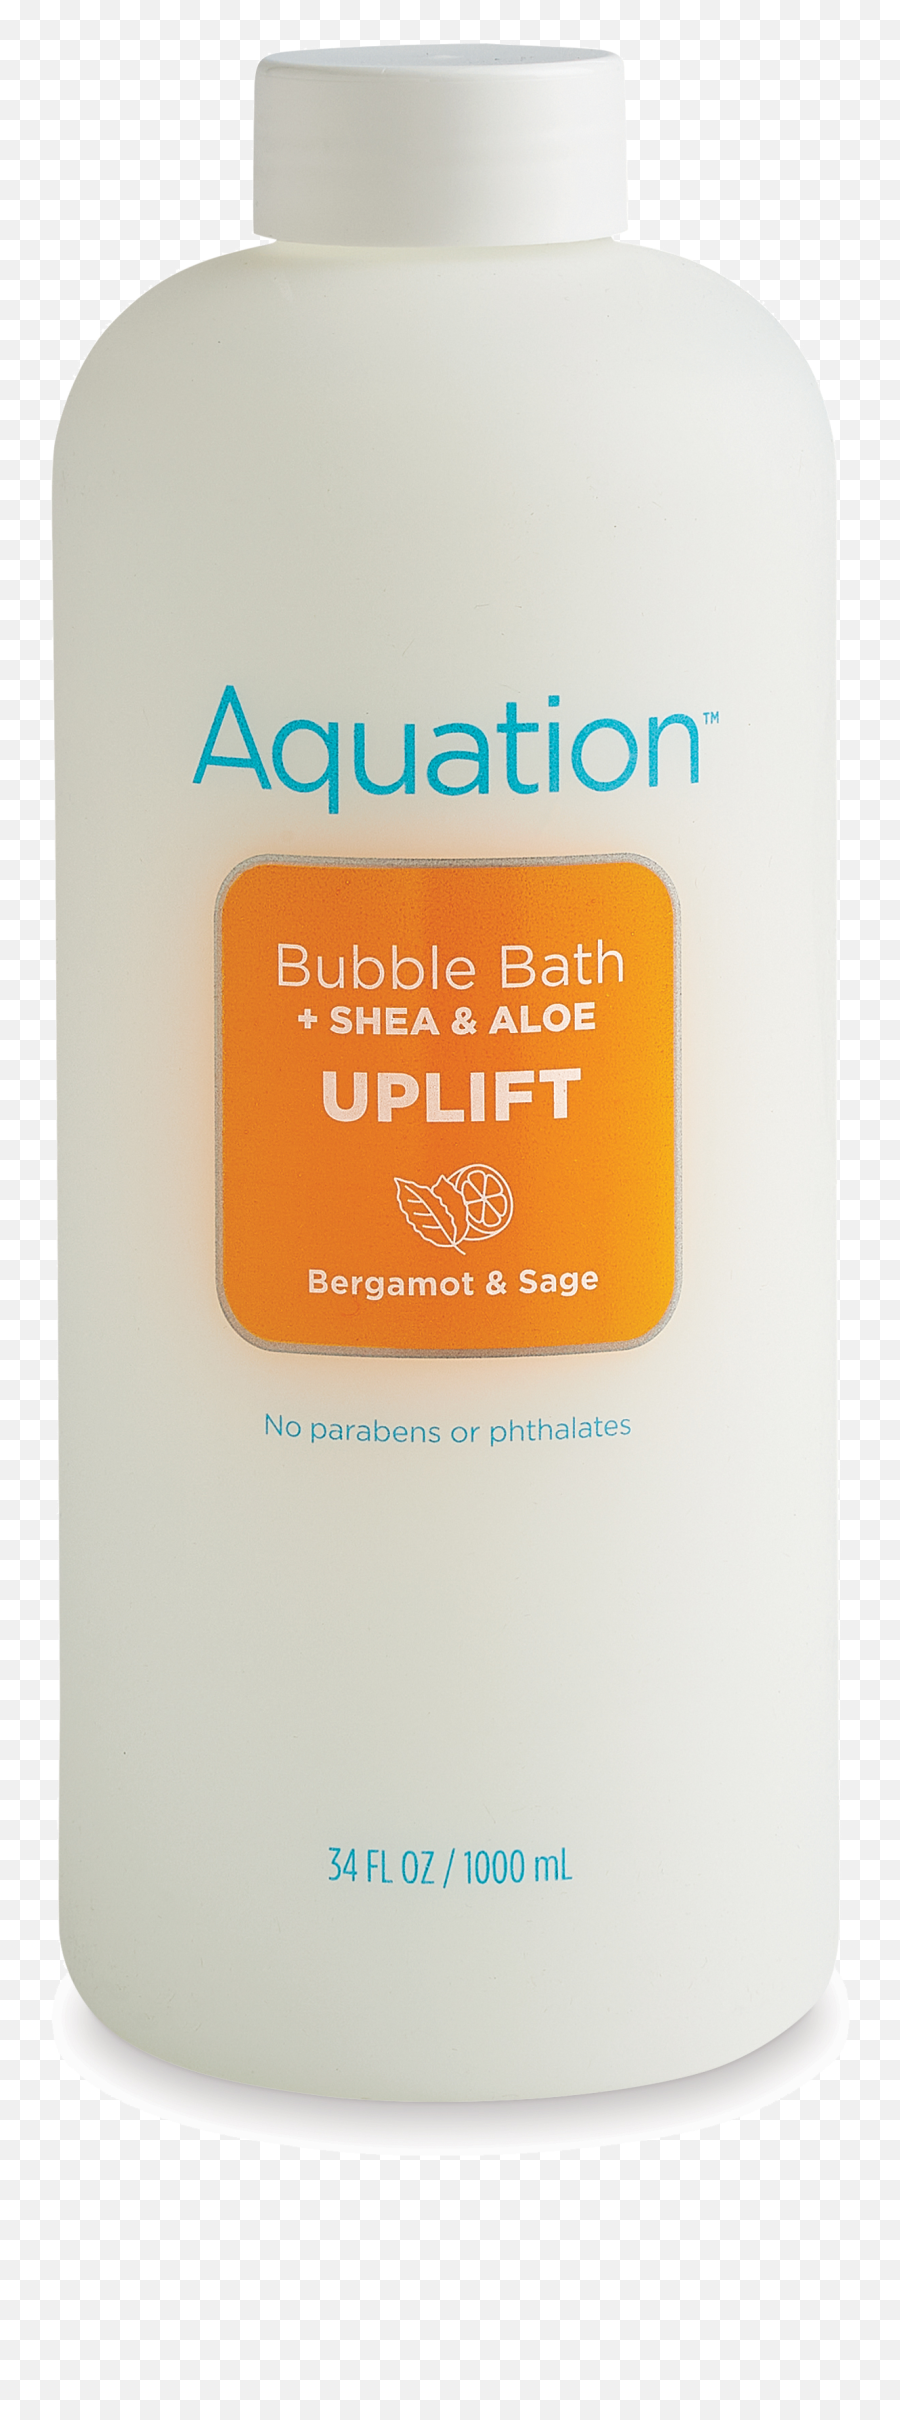 Bergamot U0026 Sage Bubble Bath - 340z Aquation Lotion Png,Bubble Bath Png